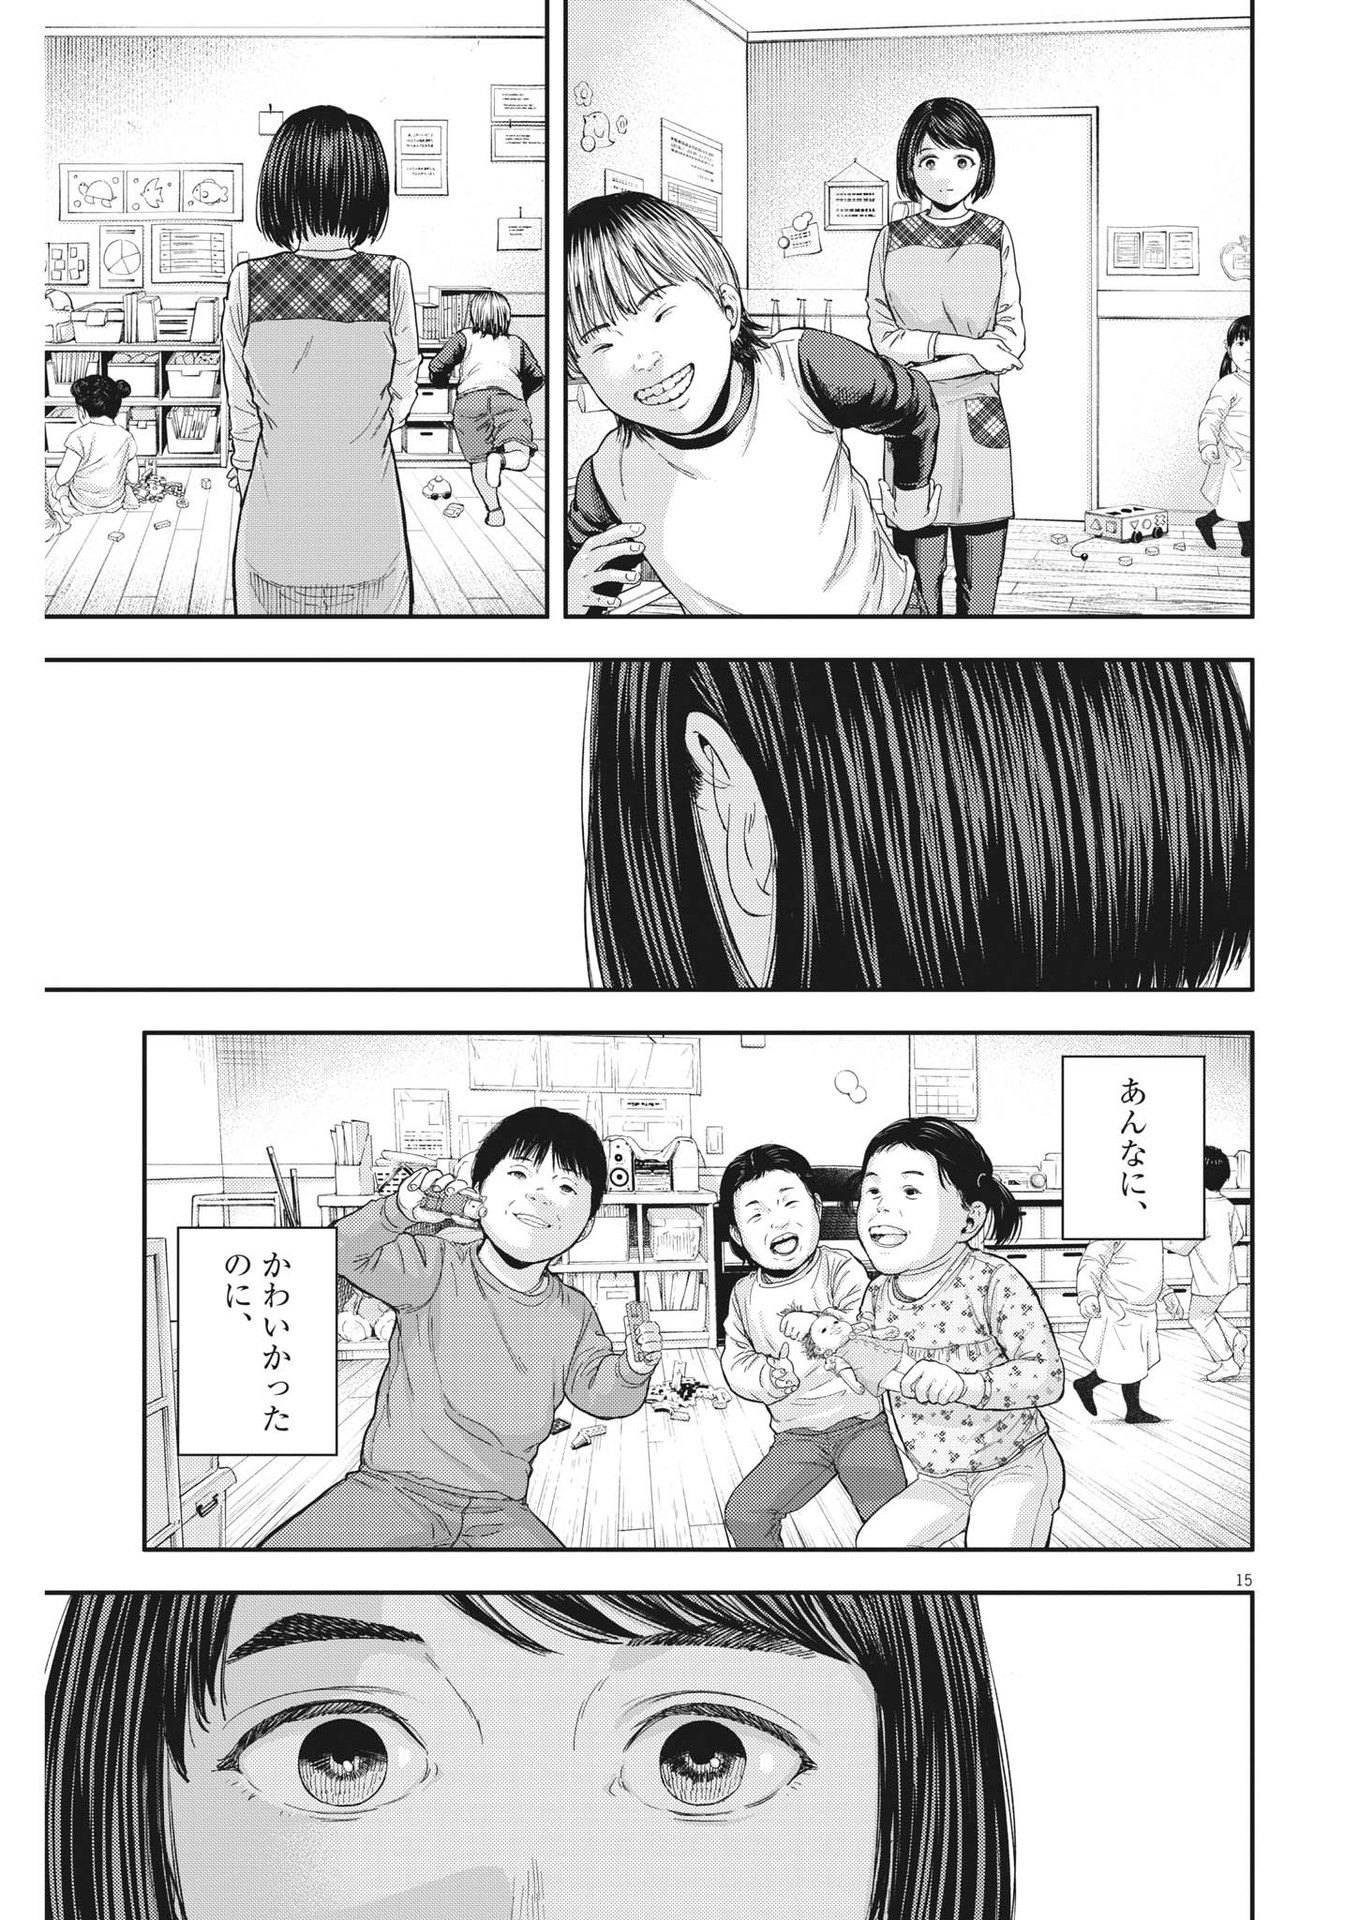 Yumenashi-sensei no Shinroshidou - Chapter 22 - Page 15